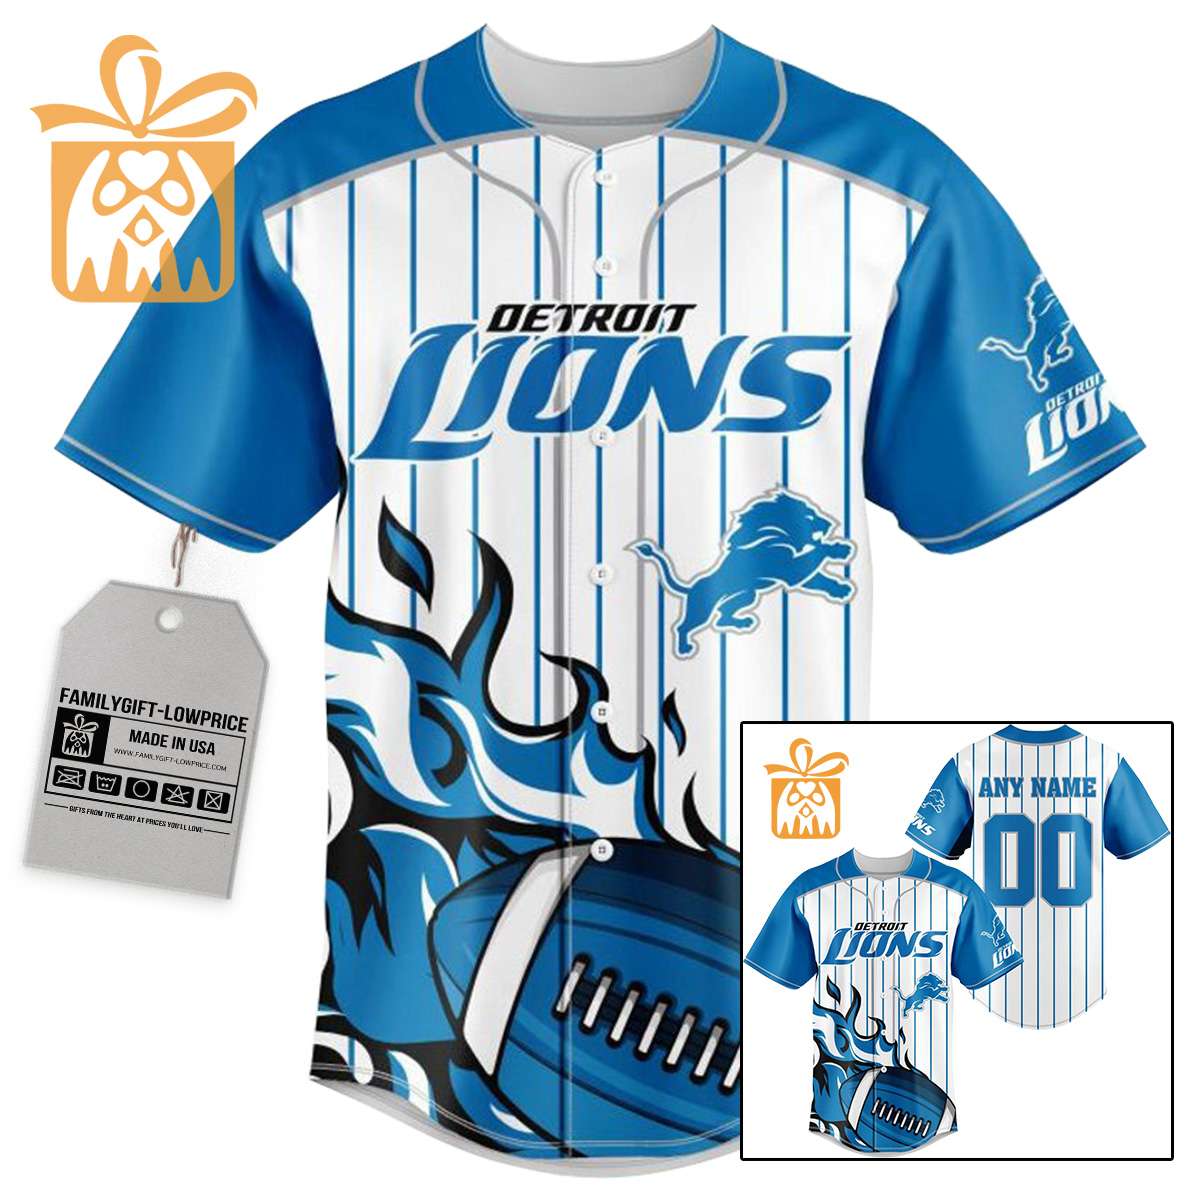 NFL Baseball Jersey - Detroit Lions Baseball Jersey TShirt - Personalized Baseball Jerseys